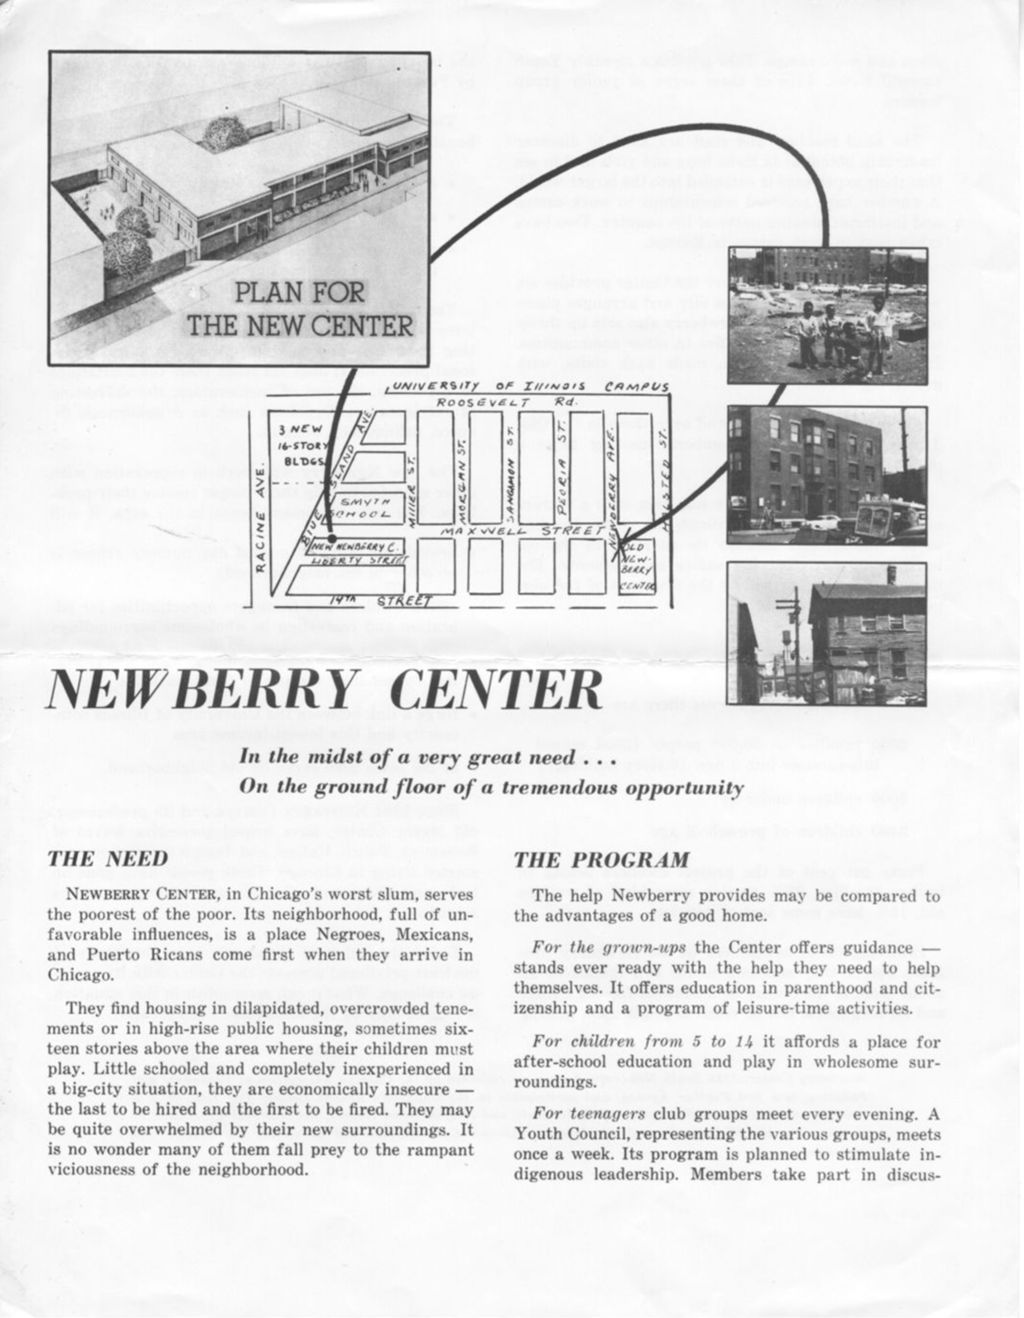 Miniature of Newberry Center flyer